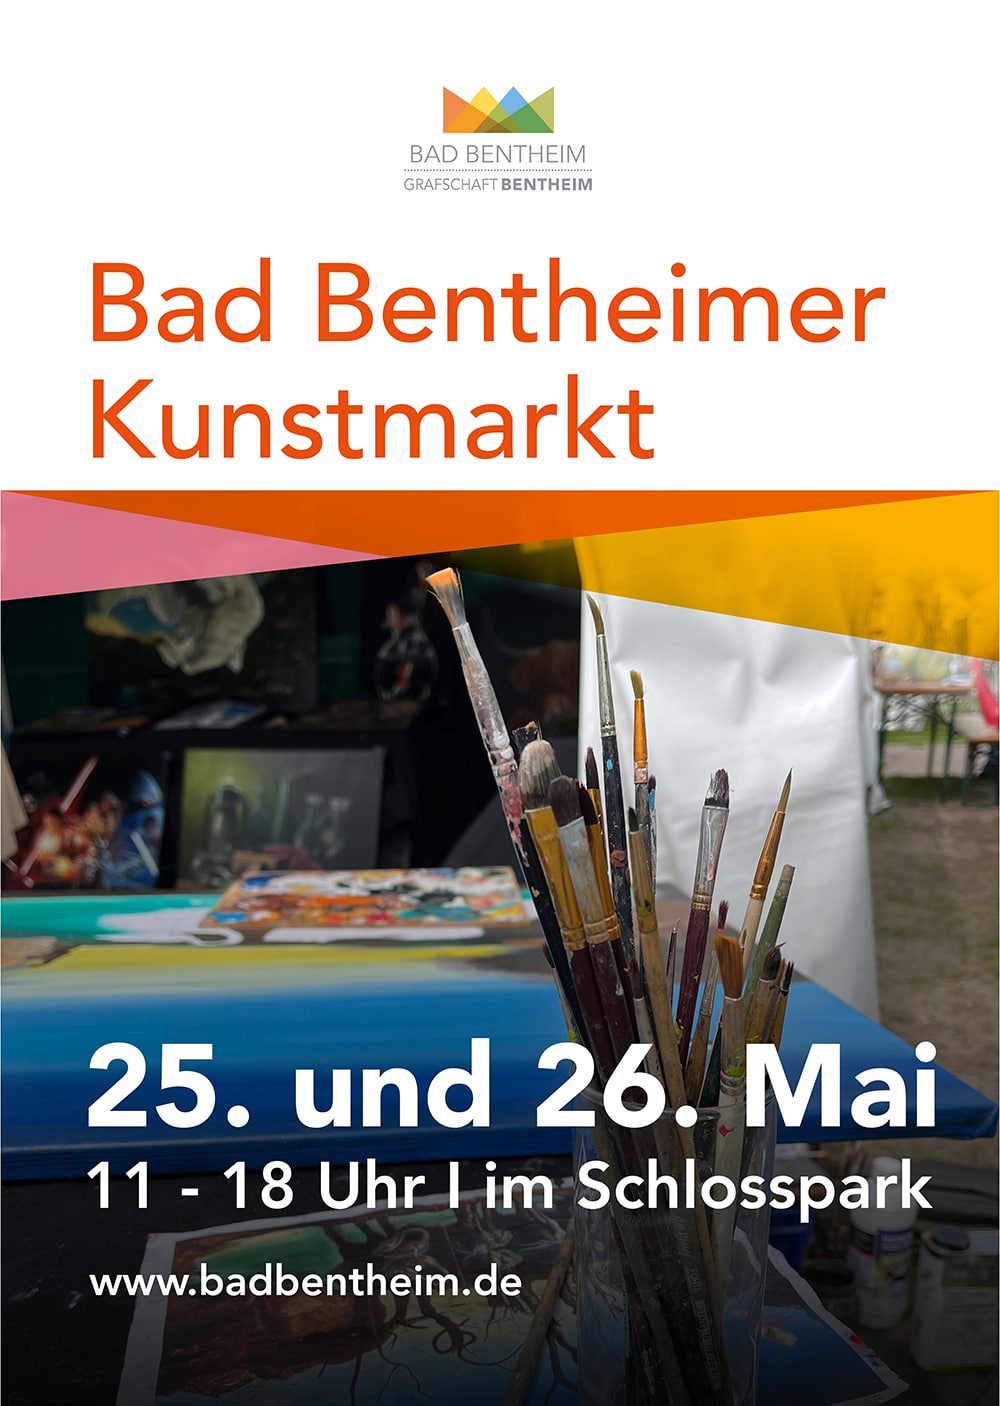 Bad Bentheimer Kunstmarkt